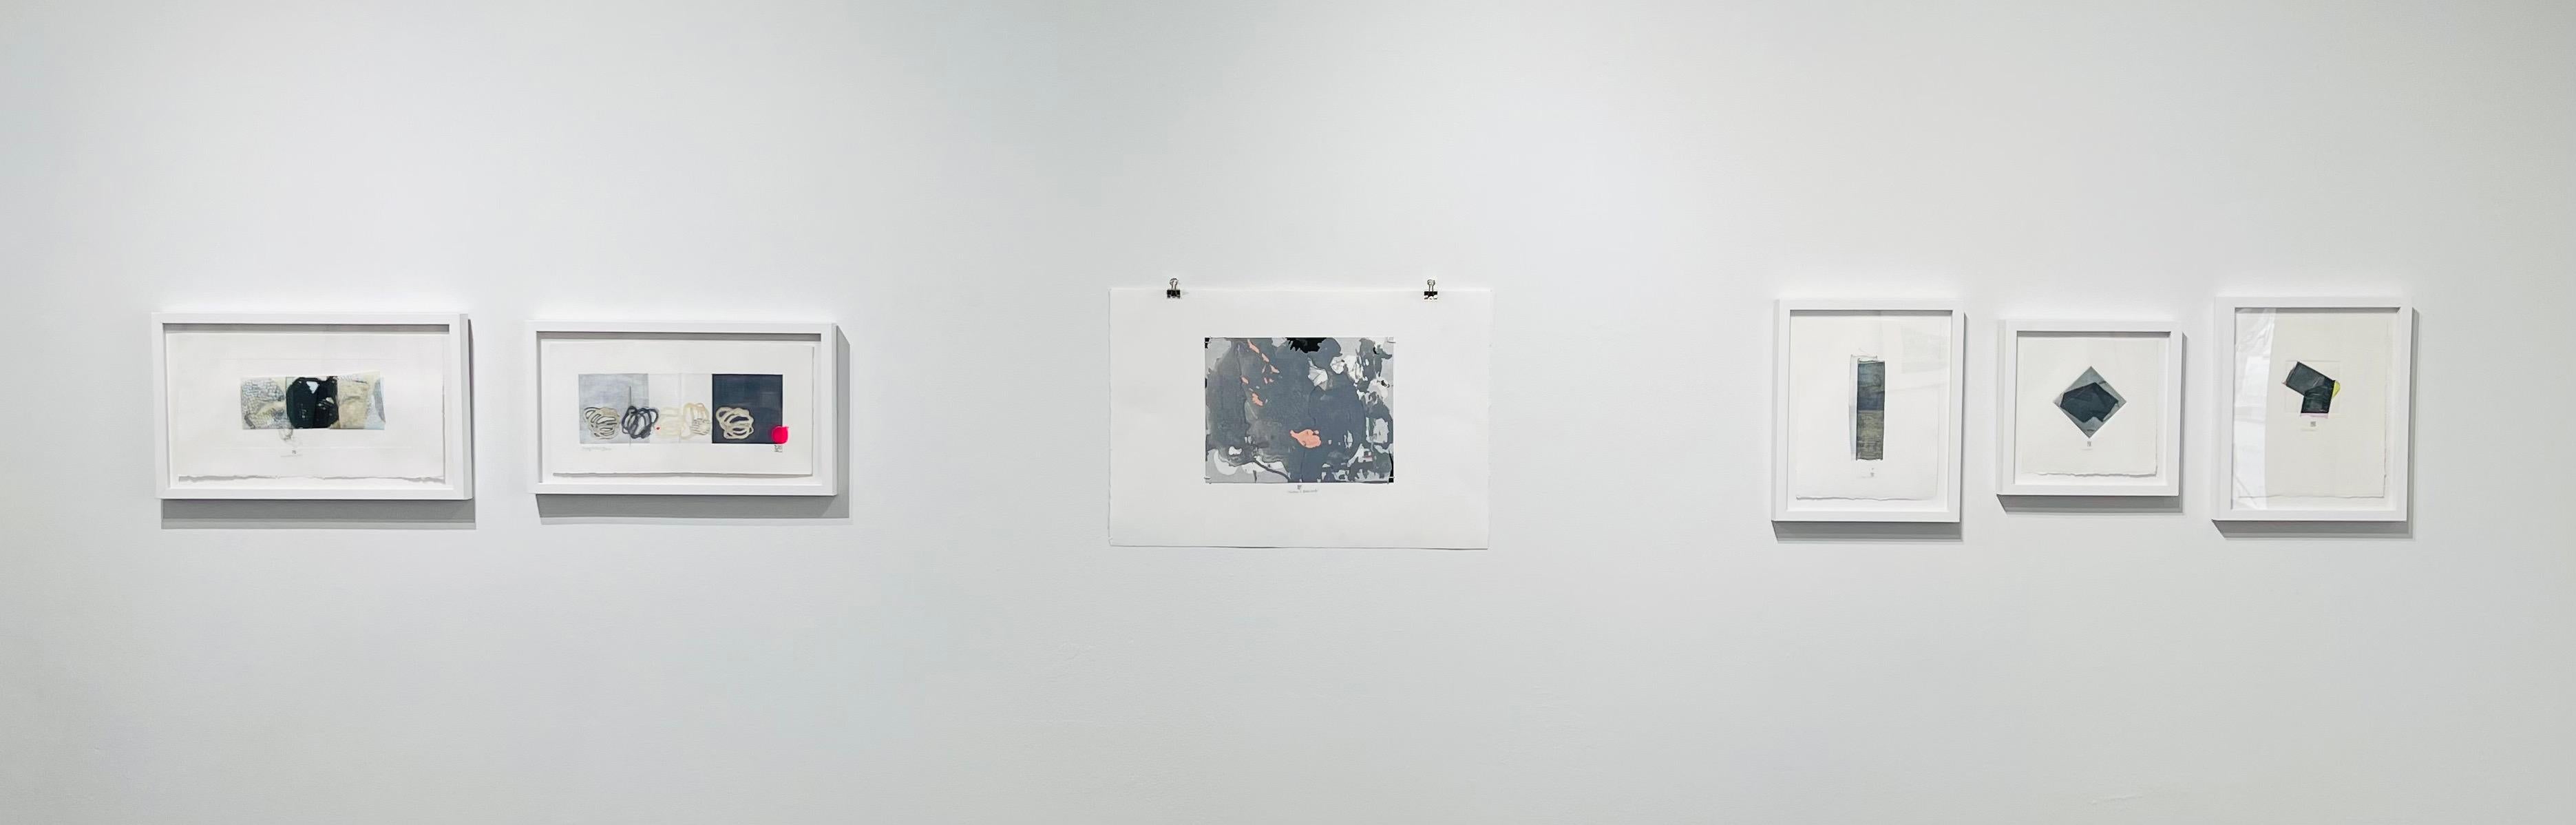 SheHadItBackwards, monotype abstrait gris et rose sur papier, tons pastel - Contemporain Print par Karin Bruckner